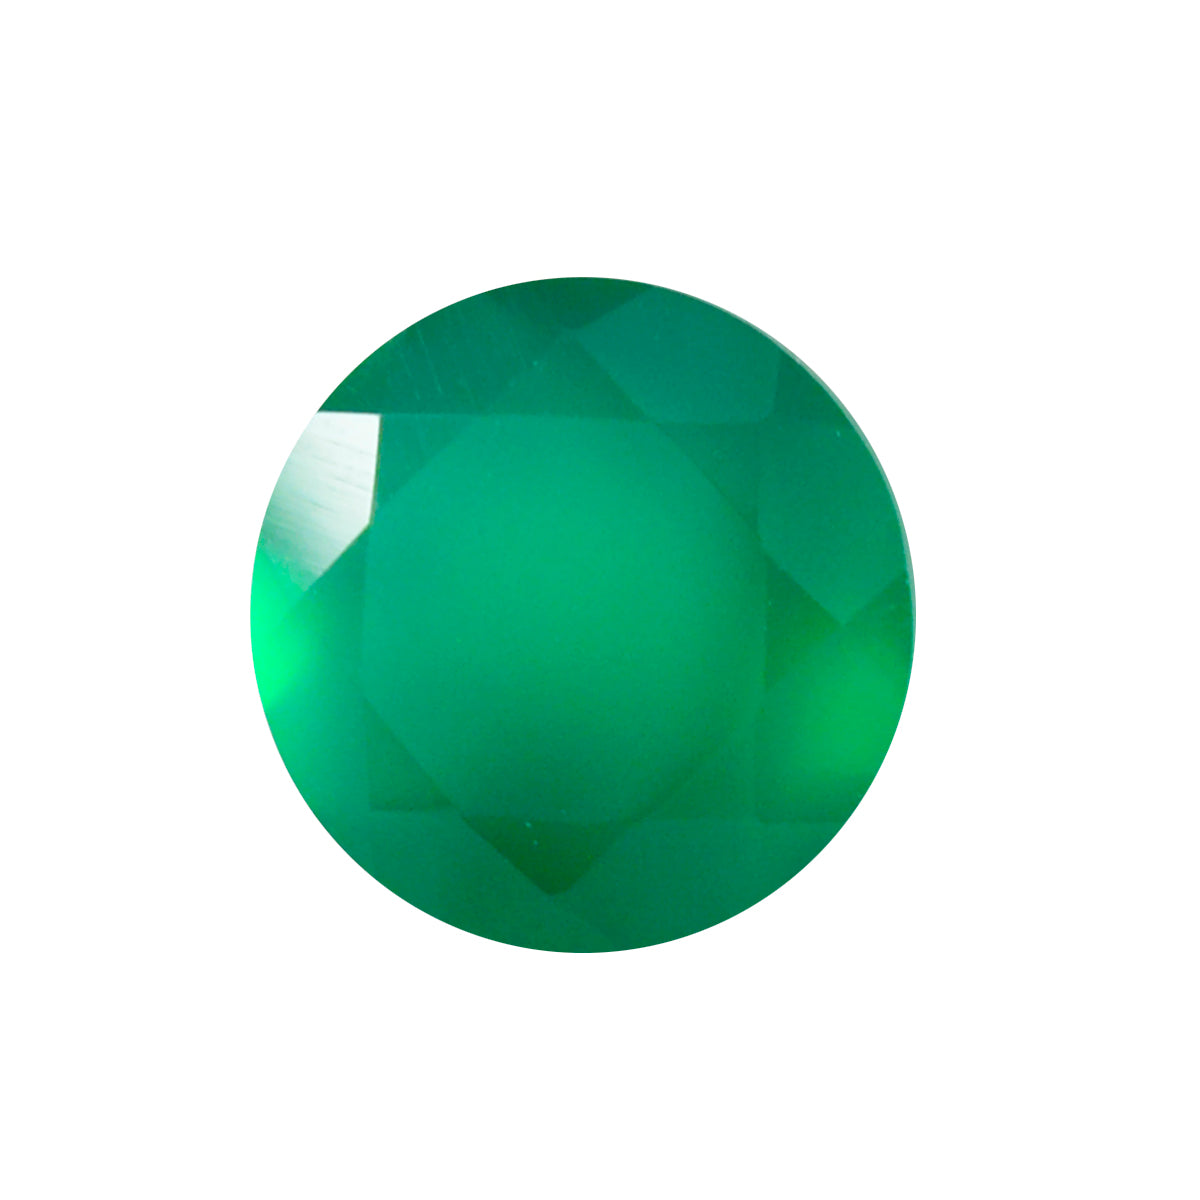 riyogems 1 шт. натуральный зеленый оникс ограненный 8x8 мм круглая форма красивый качественный драгоценный камень